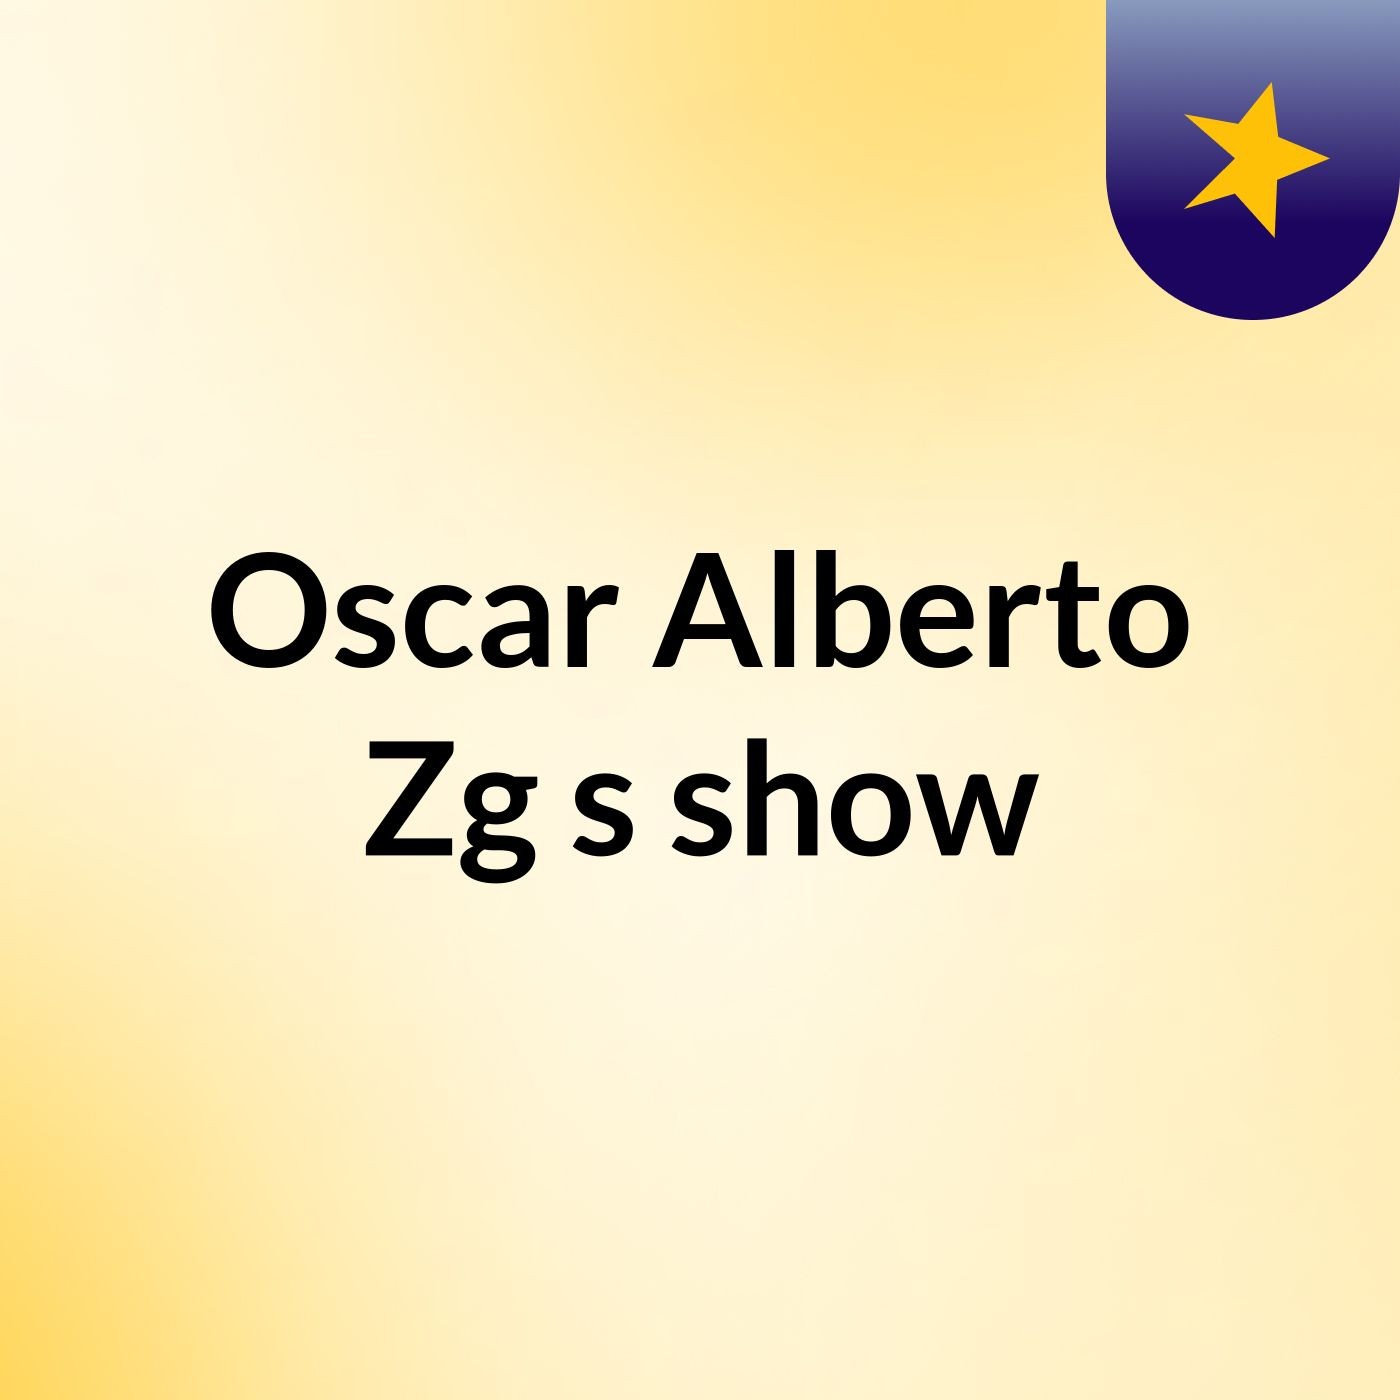 Oscar Alberto Zg's show